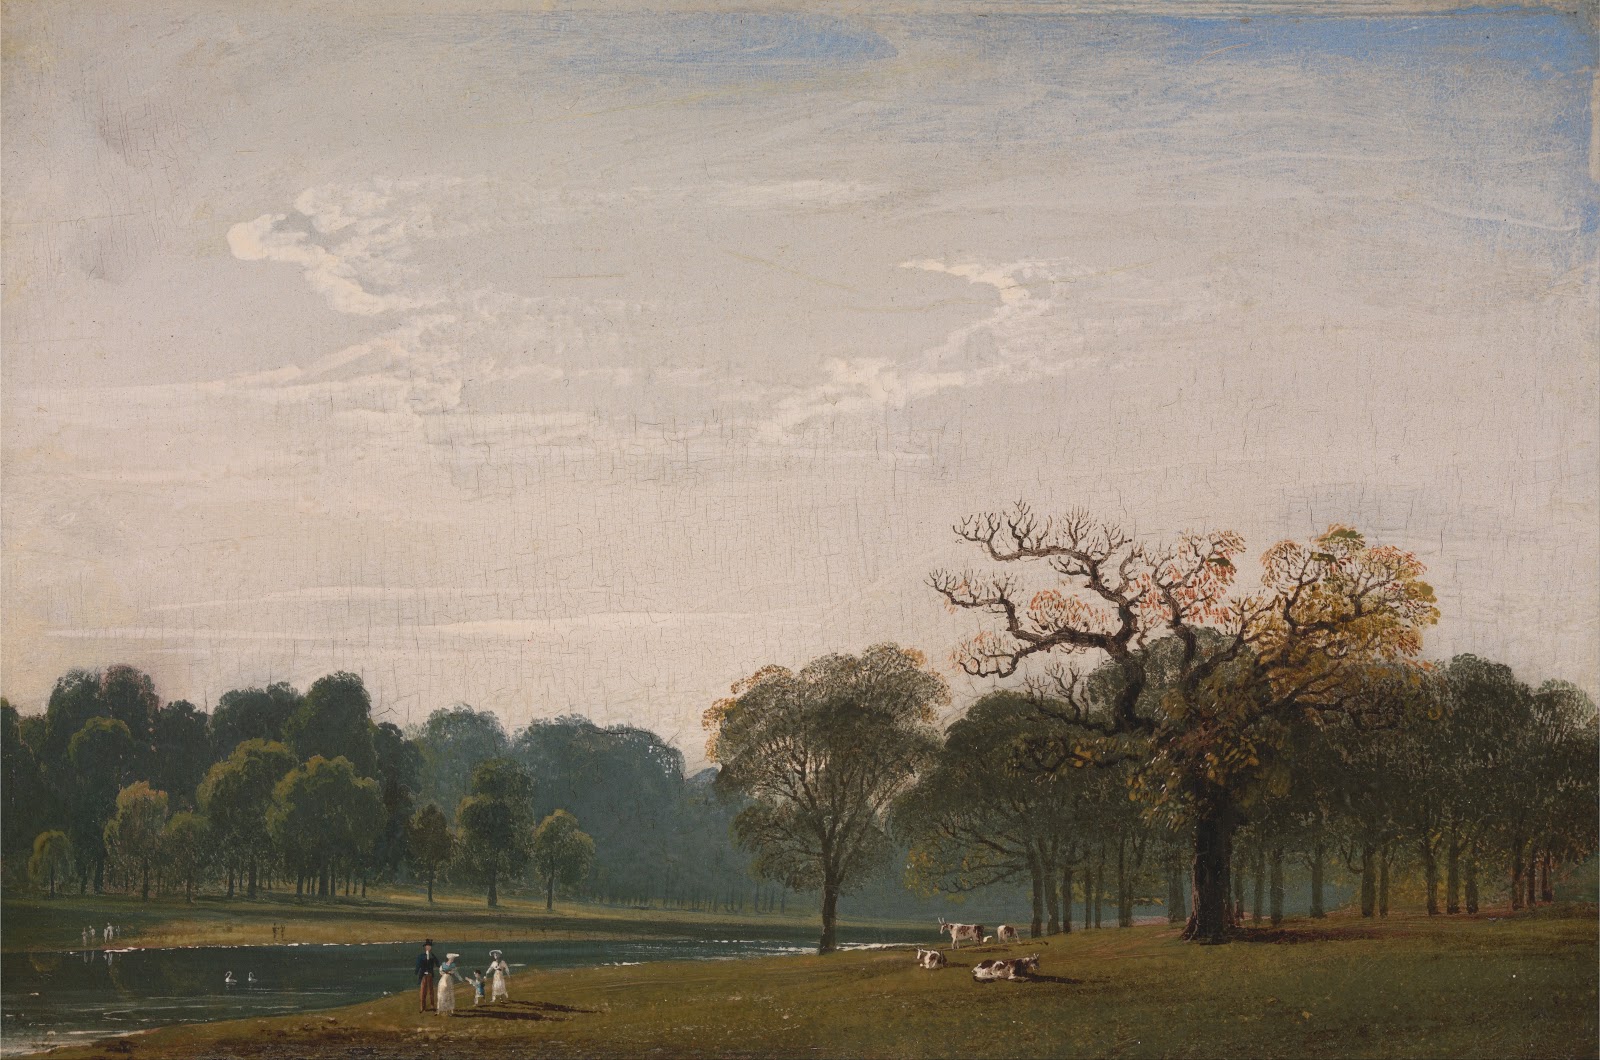 John+Martin+Landscape-1789-1854 (52).jpg